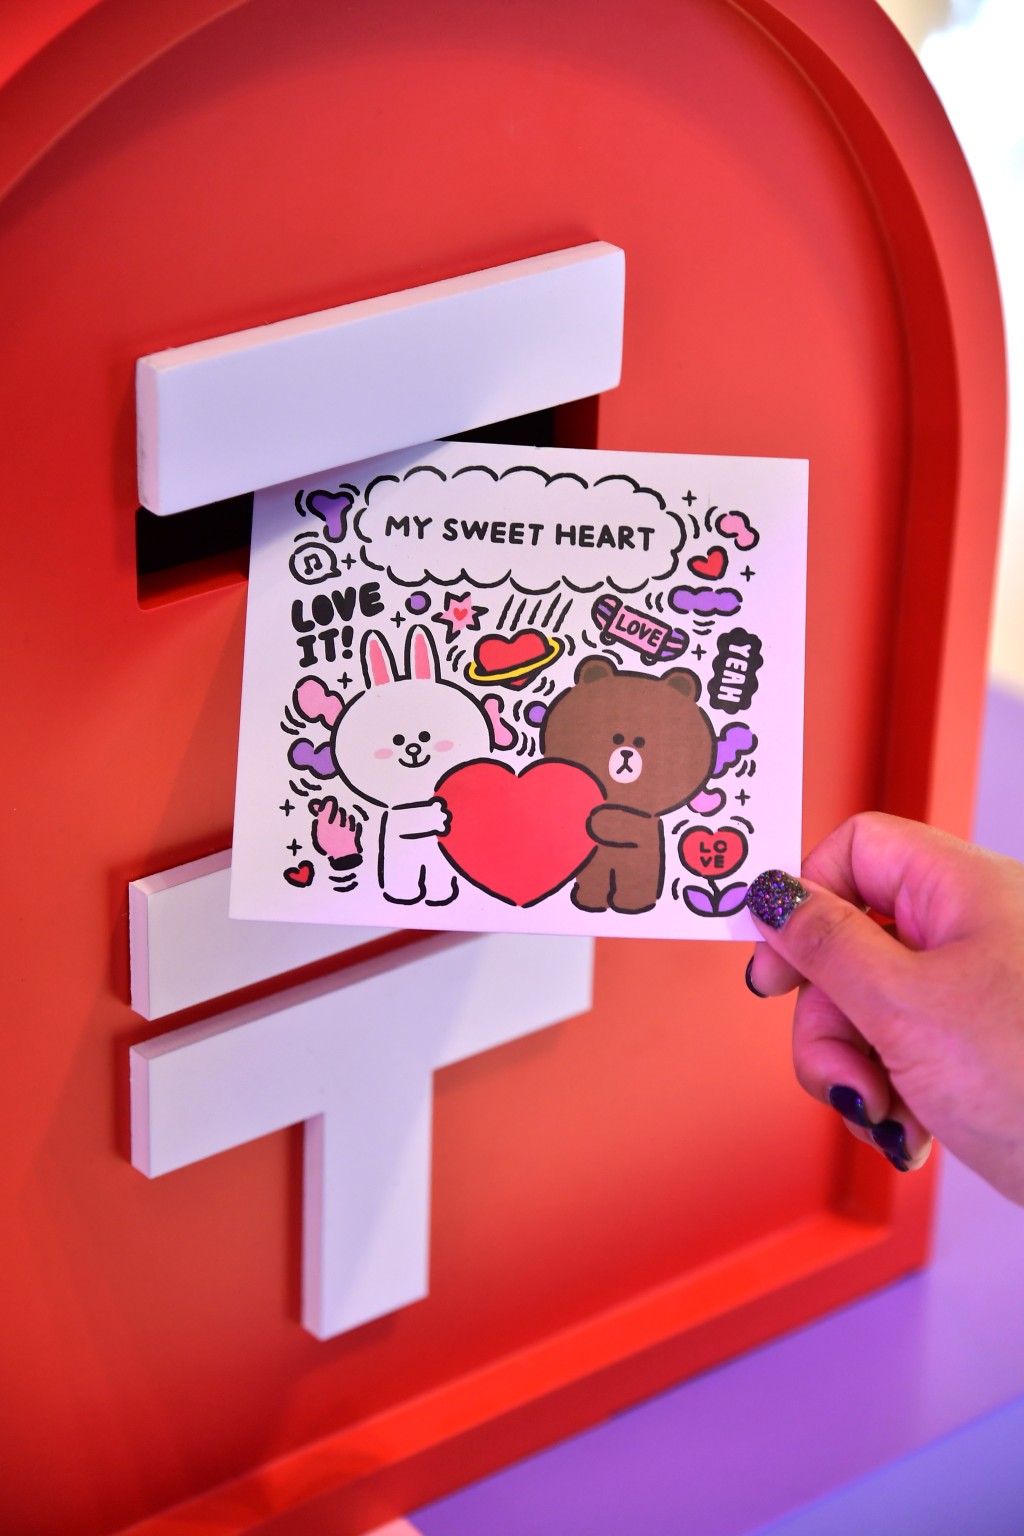 每张寄出的明信片，FTLife 富通保险都会向「Share for Good 爱互送」平台捐$10。